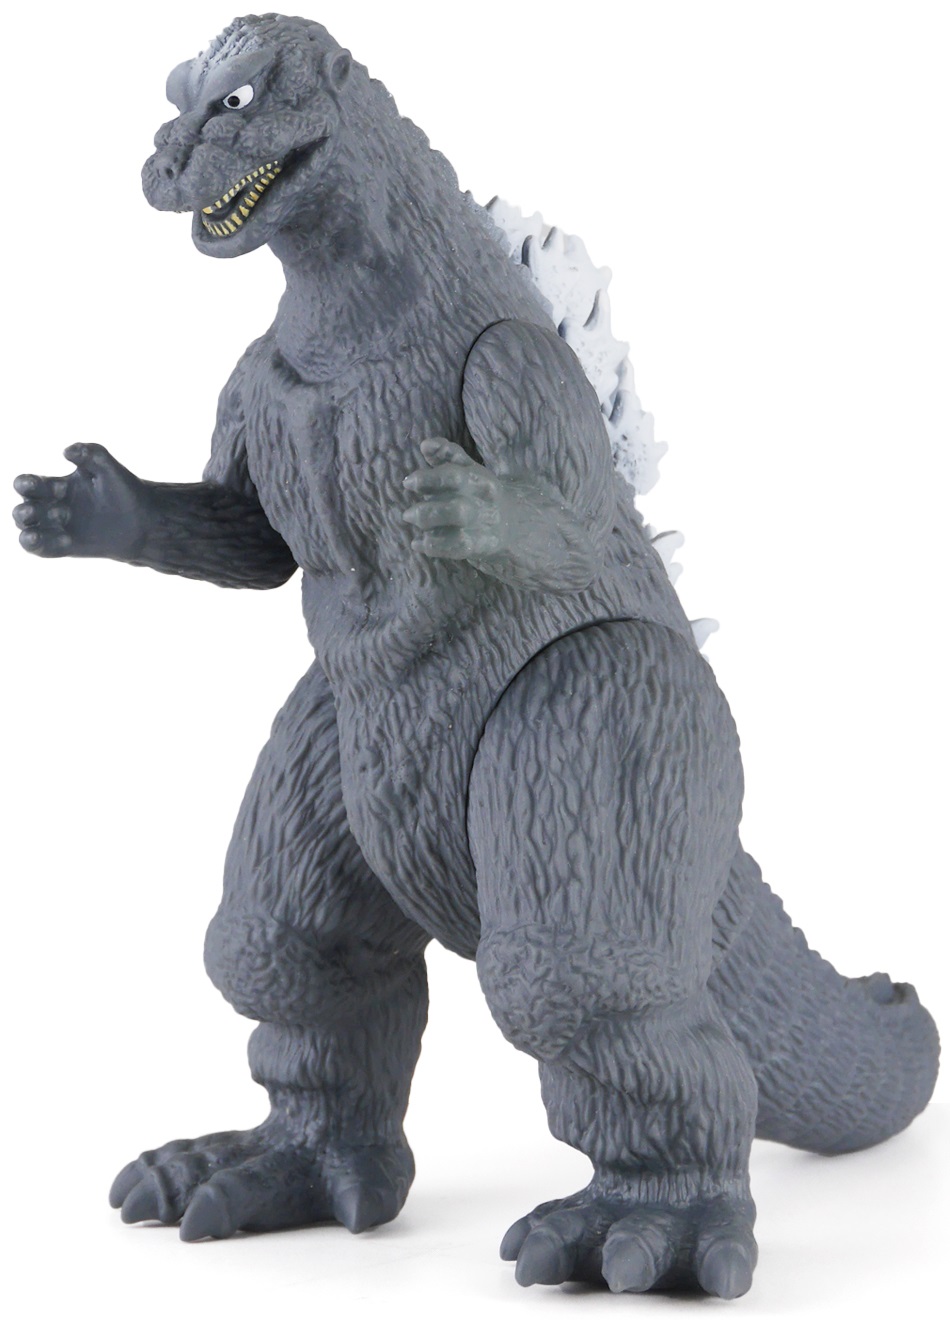 Bandai Movie Monster: Godzilla Final Wars: Godzilla 1954 